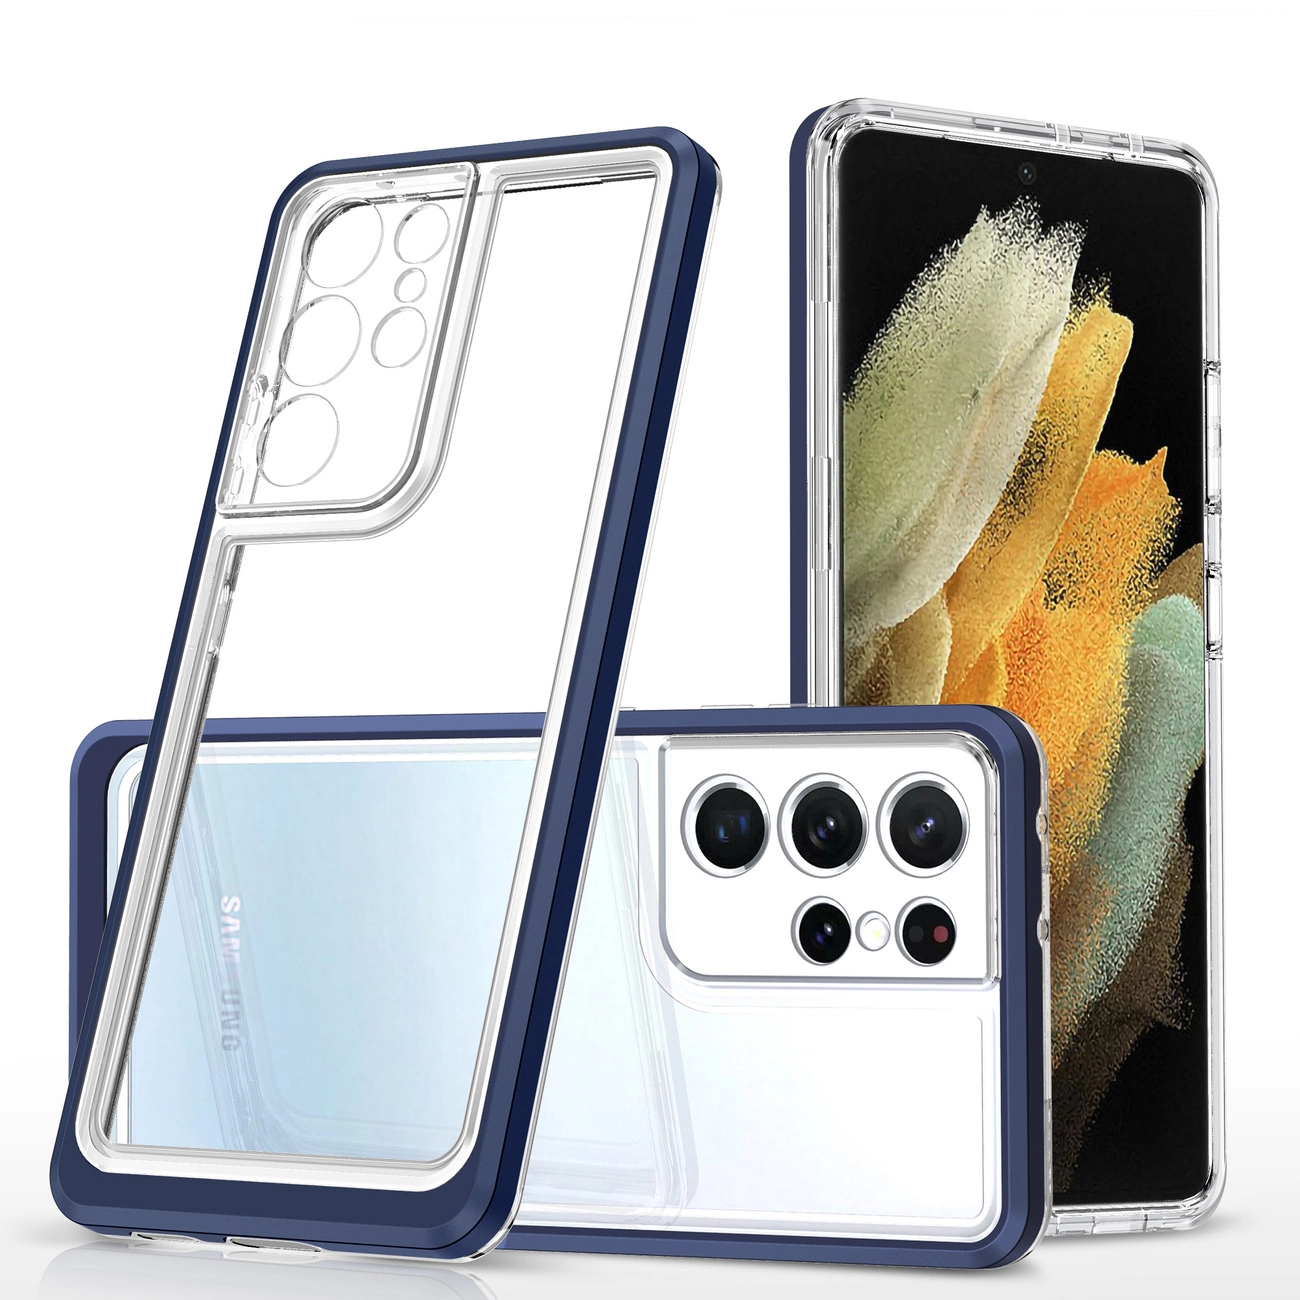 Hurtel Průhledné pouzdro 3v1 pro Samsung Galaxy S21 Ultra 5G gelový kryt s rámečkem modrý